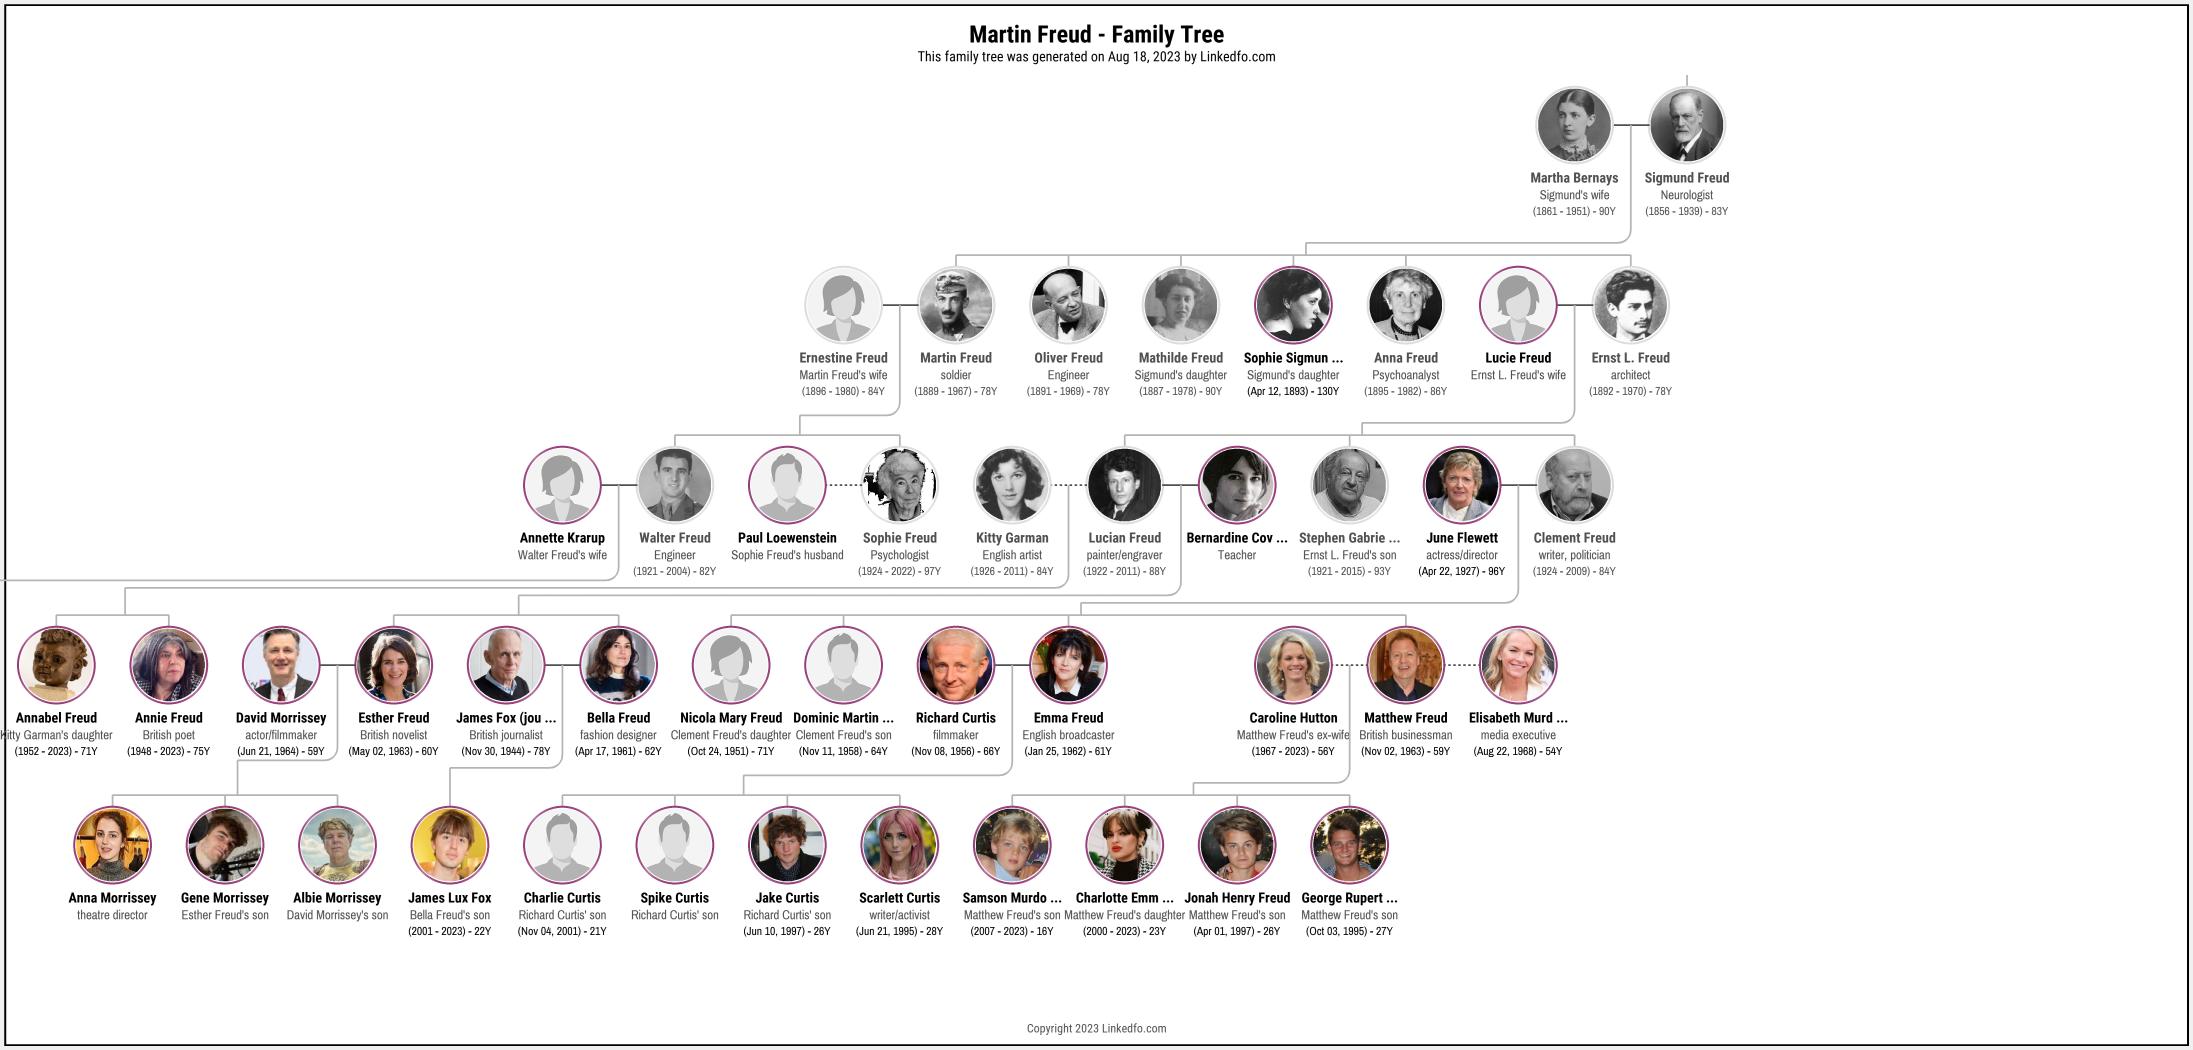 Martin Freud's Family Tree